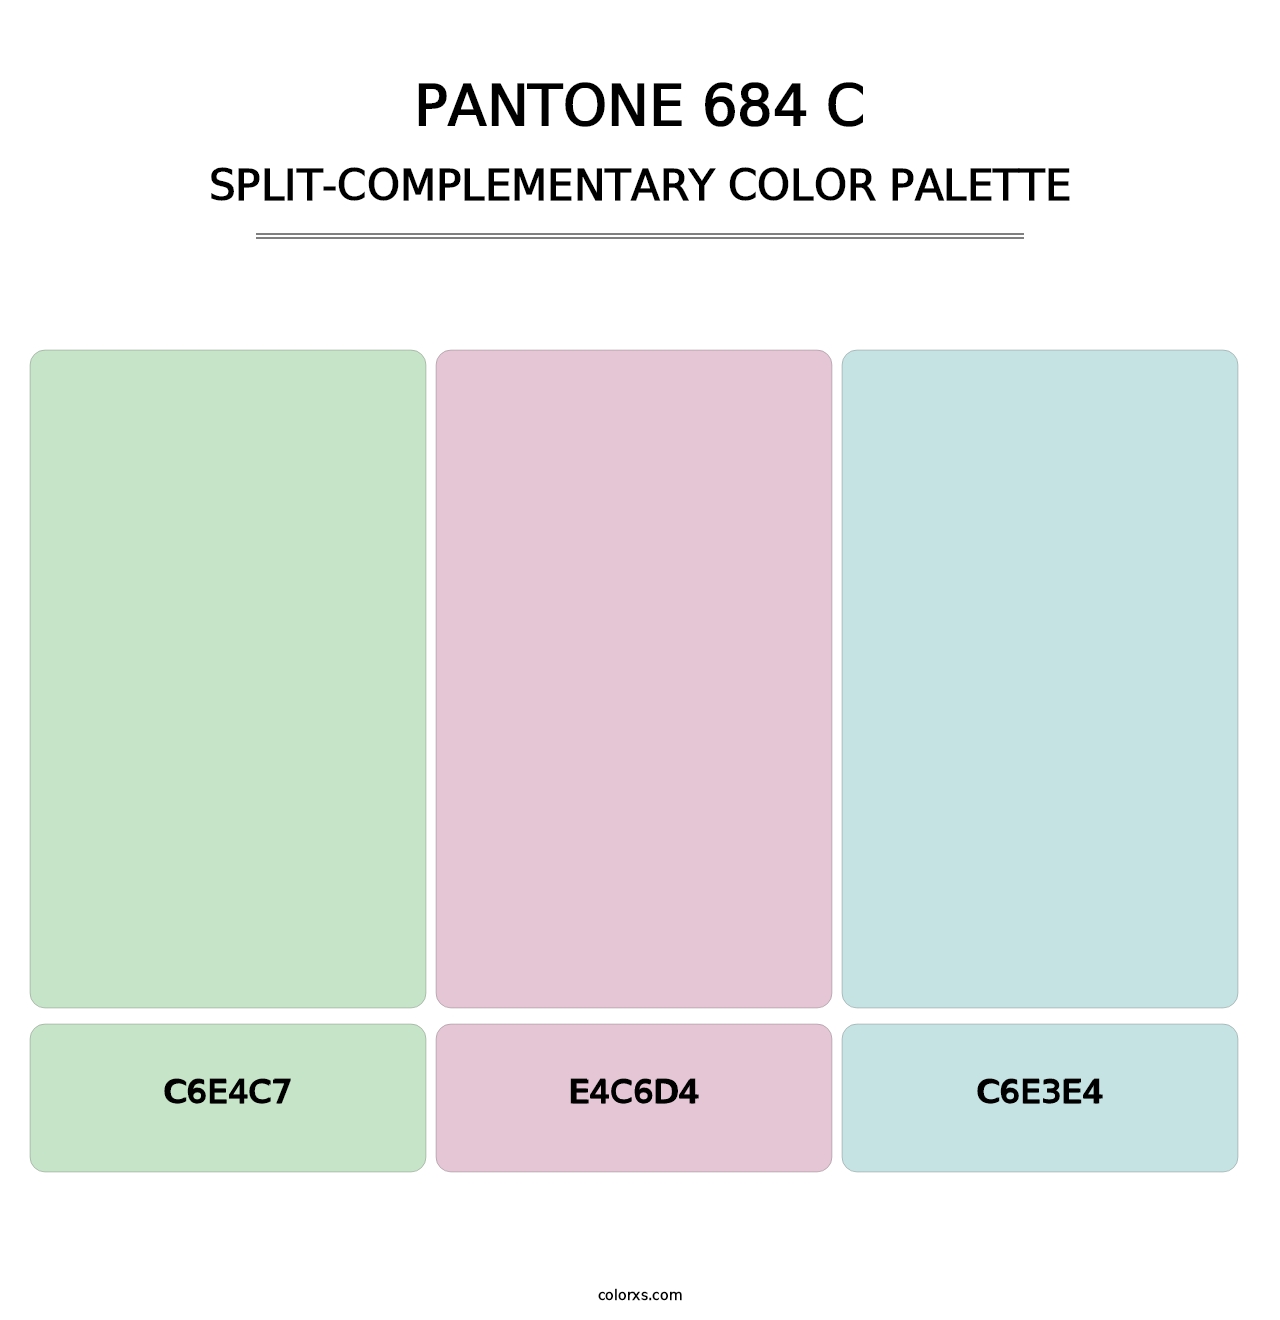 PANTONE 684 C - Split-Complementary Color Palette